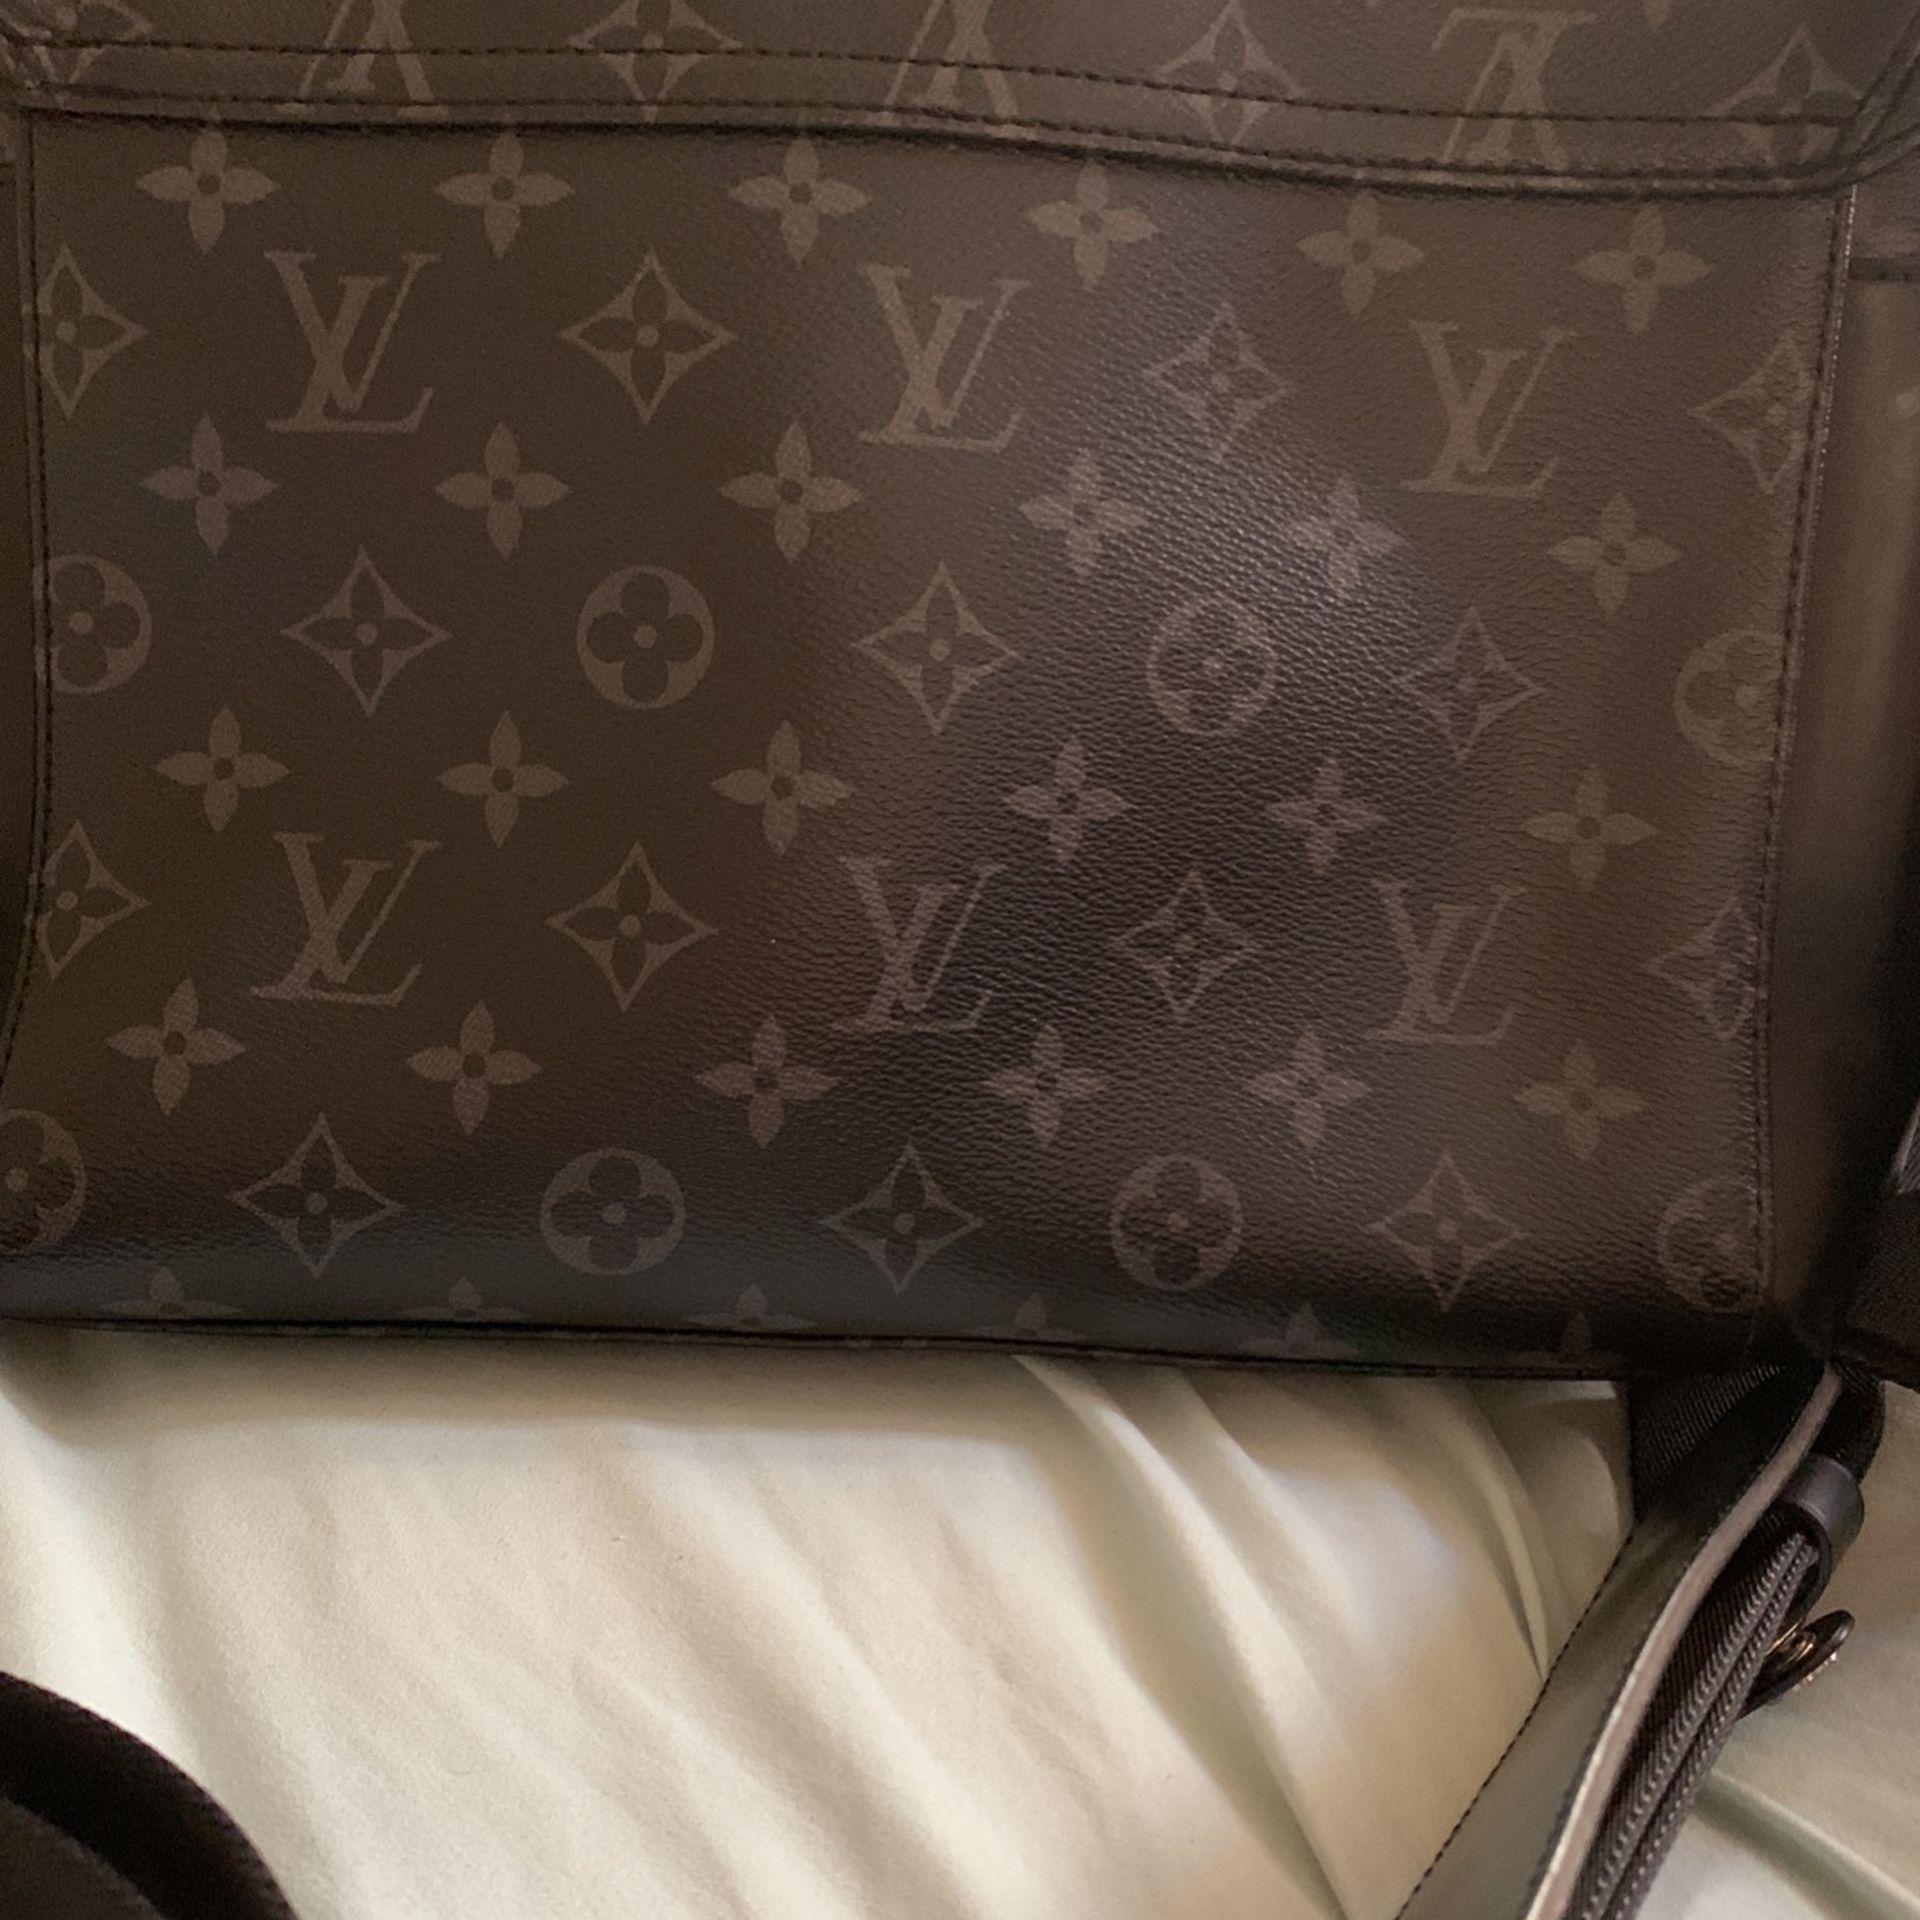 Men's Louis Vuitton Messenger Bag… Original for Sale in Huntington Park, CA  - OfferUp